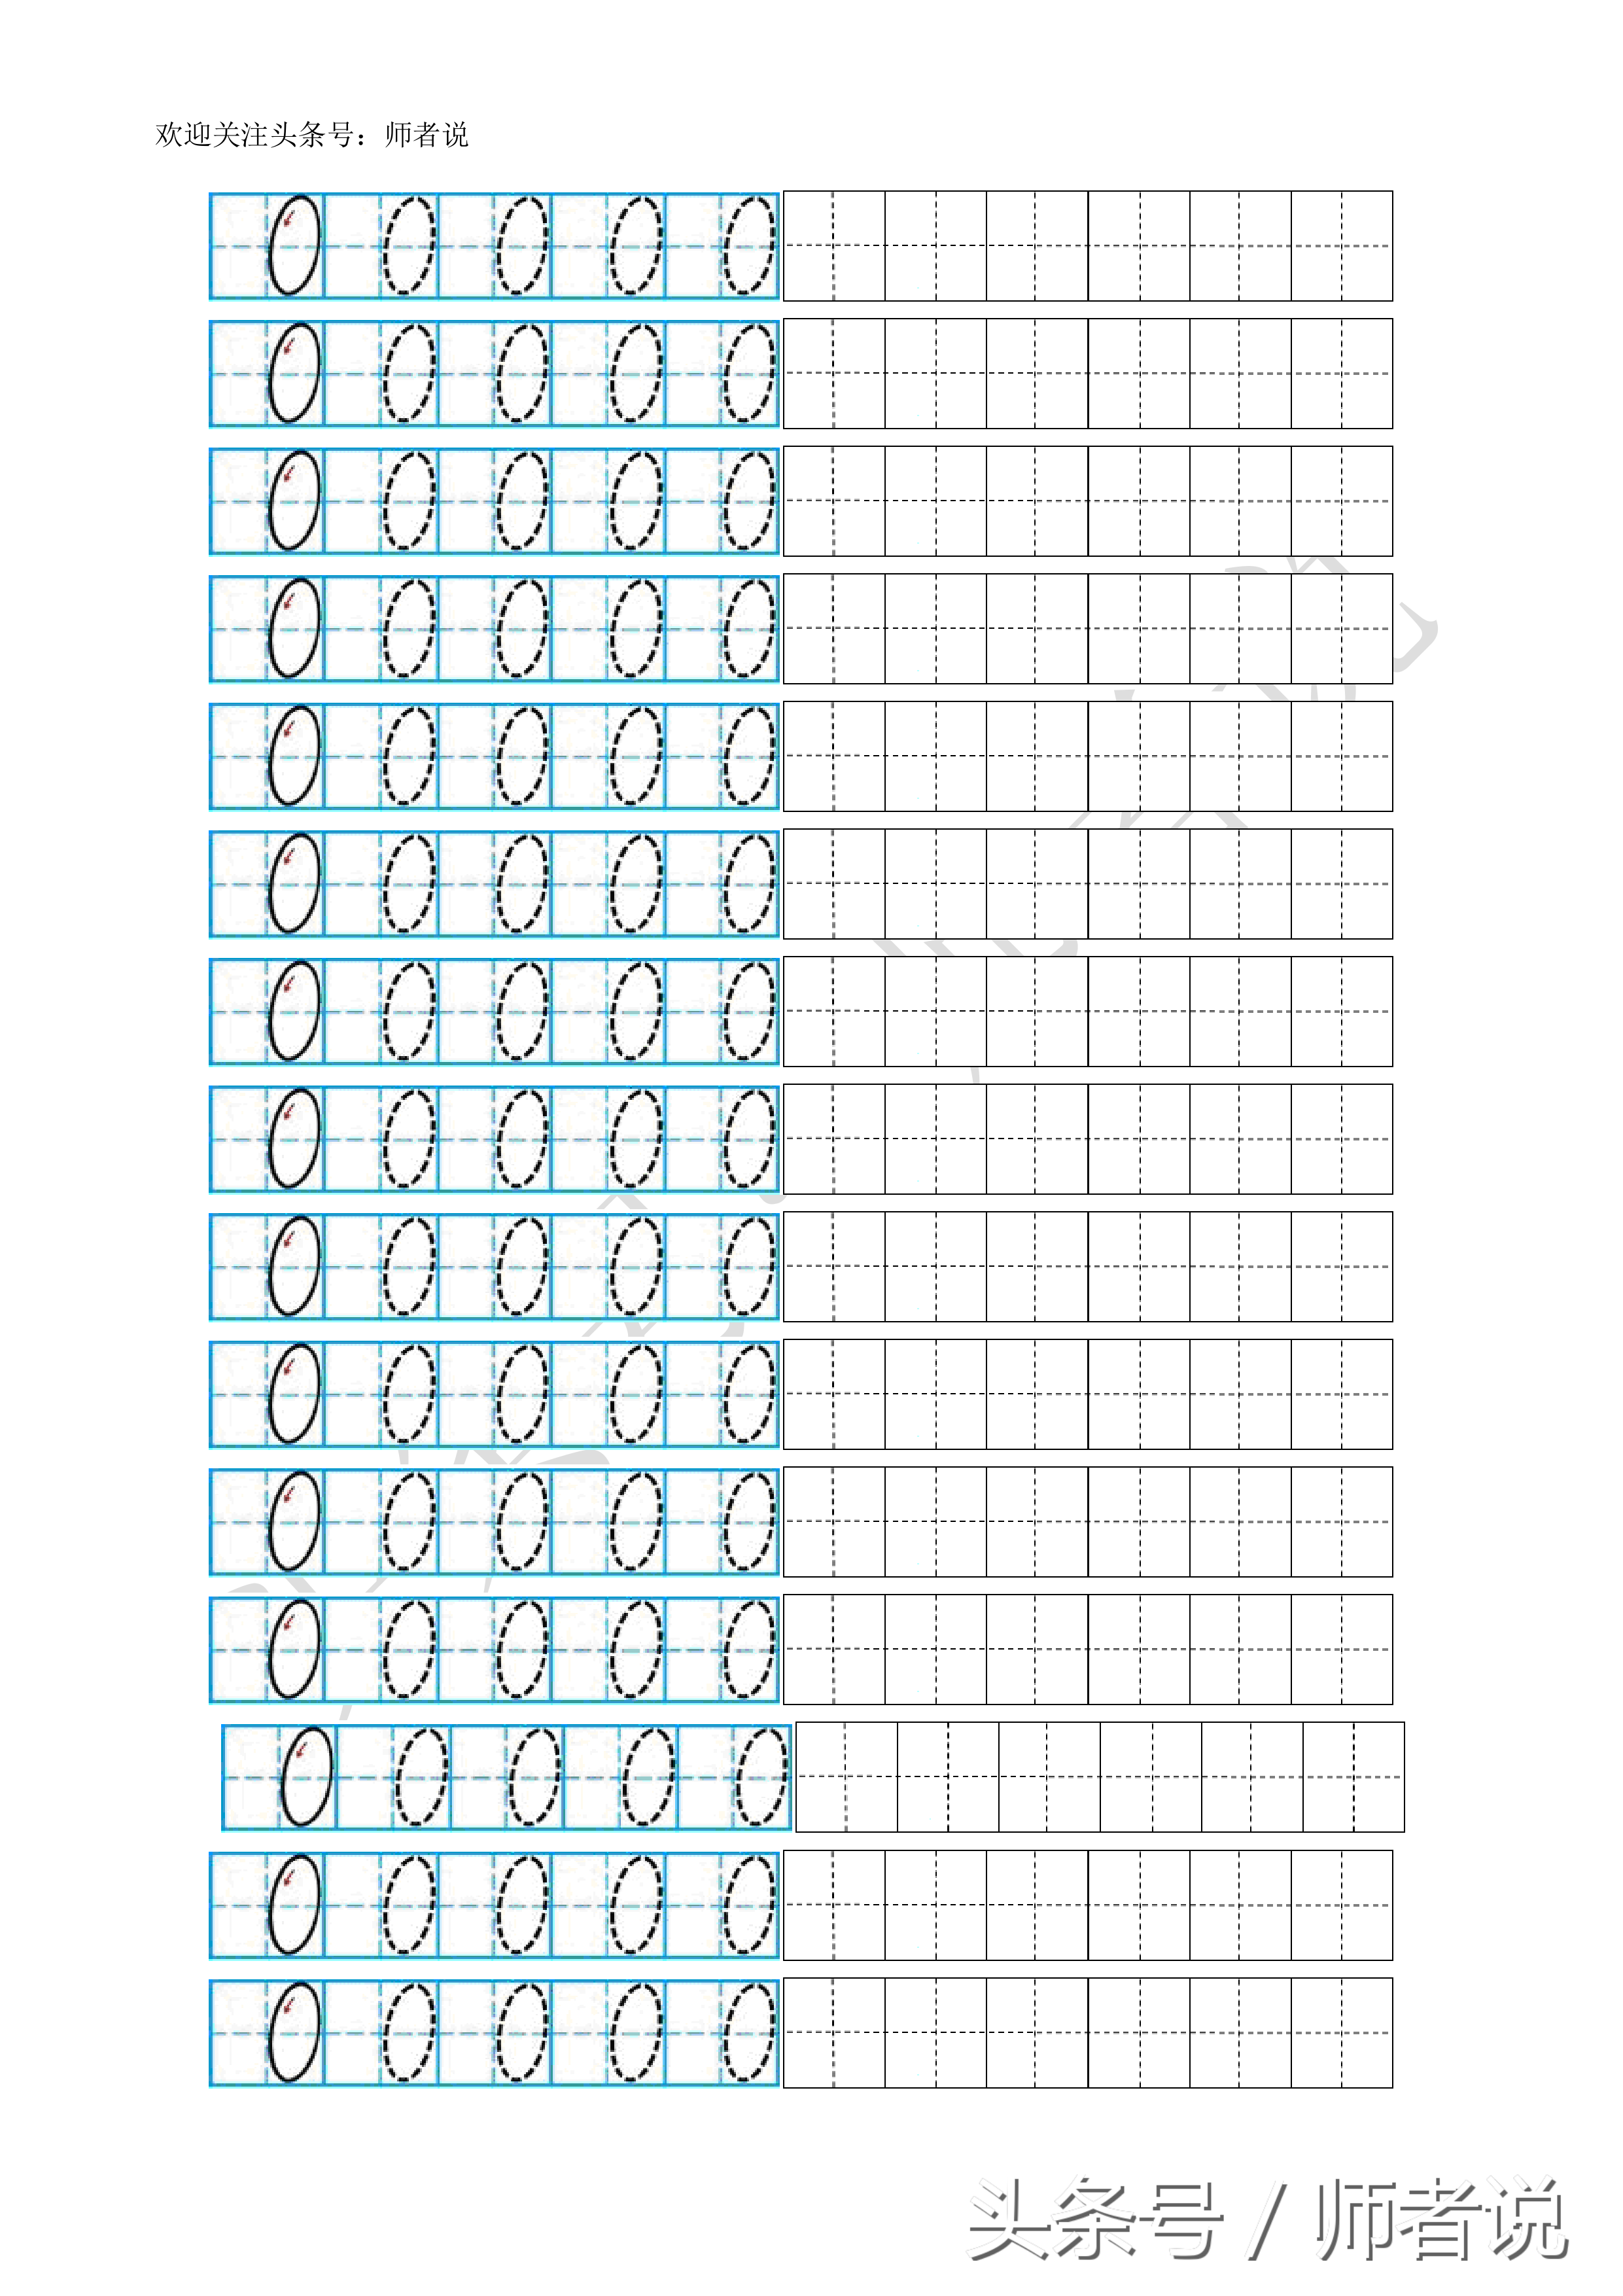 数字描红1到10打印（幼儿阿拉伯数字描红1-10打印版）(2)